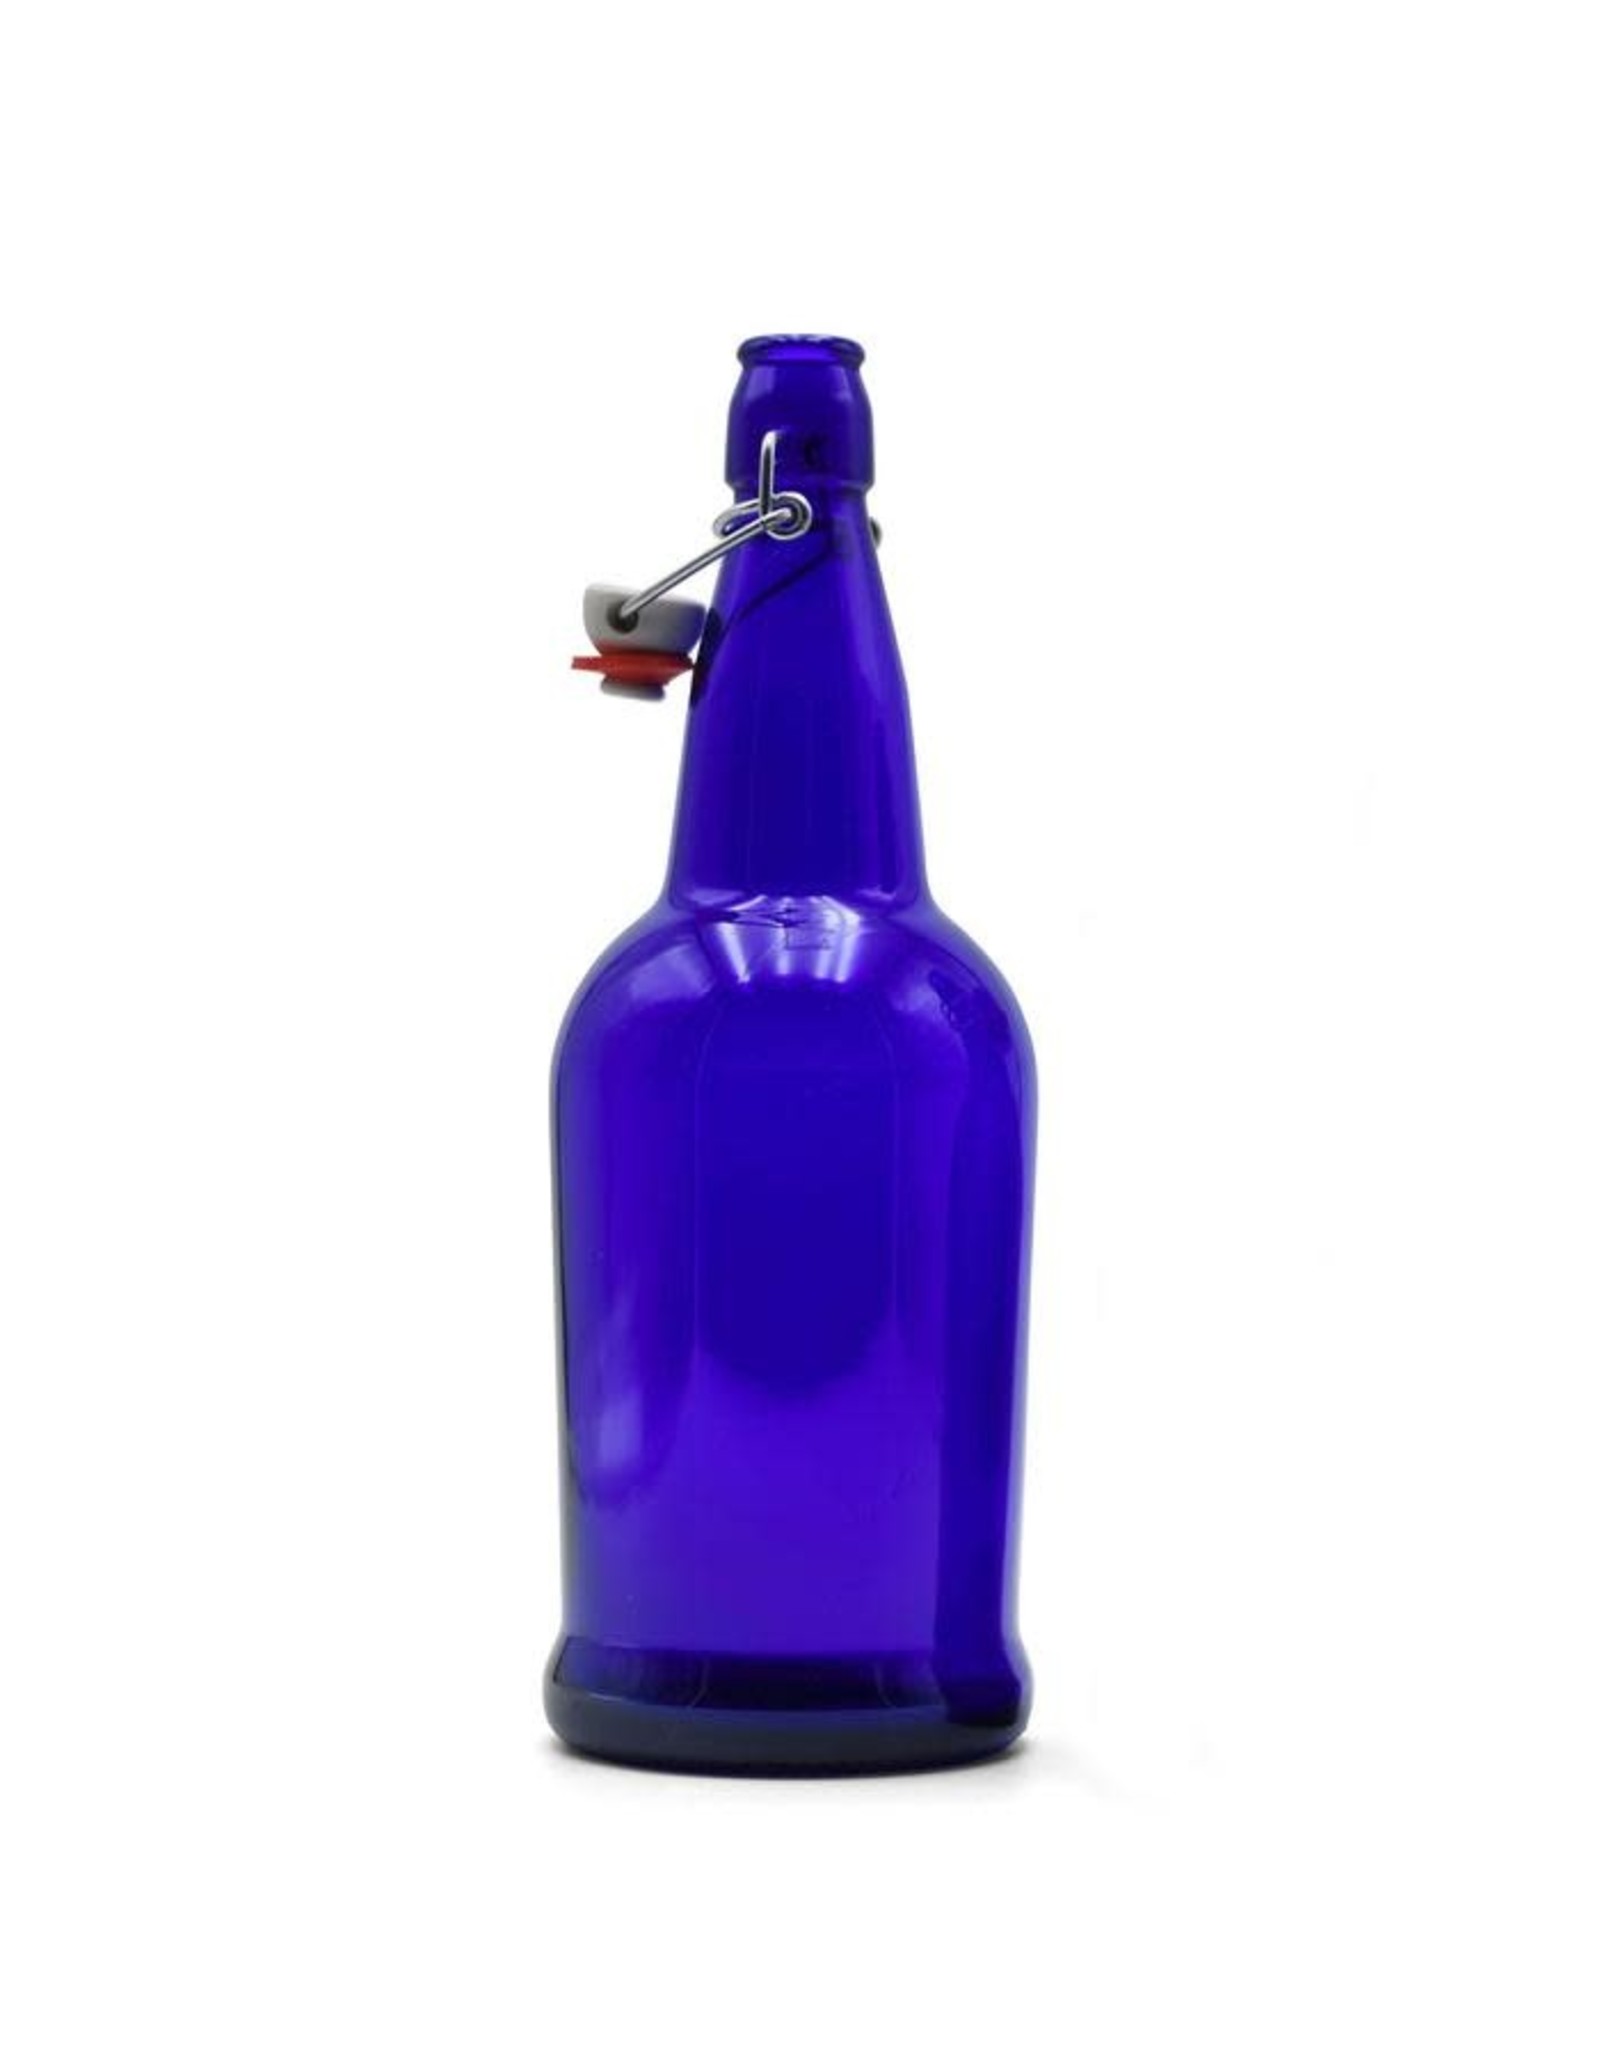 Flip top bottle Cobalt Blue 1 L case 12 ct